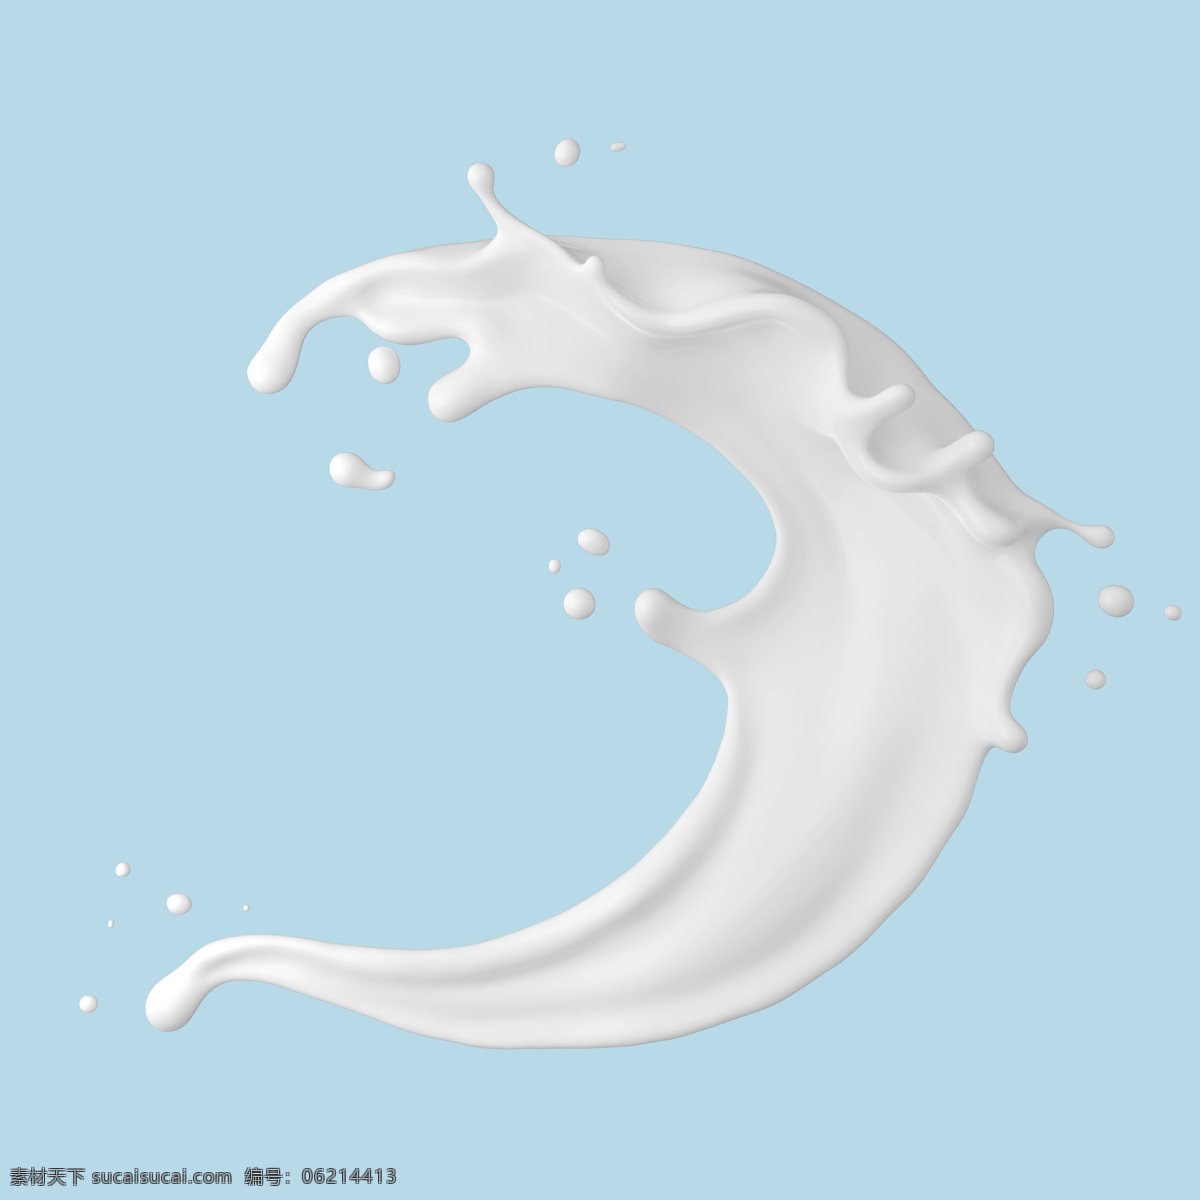 牛奶 飞溅 果汁 背景 海报 素材图片